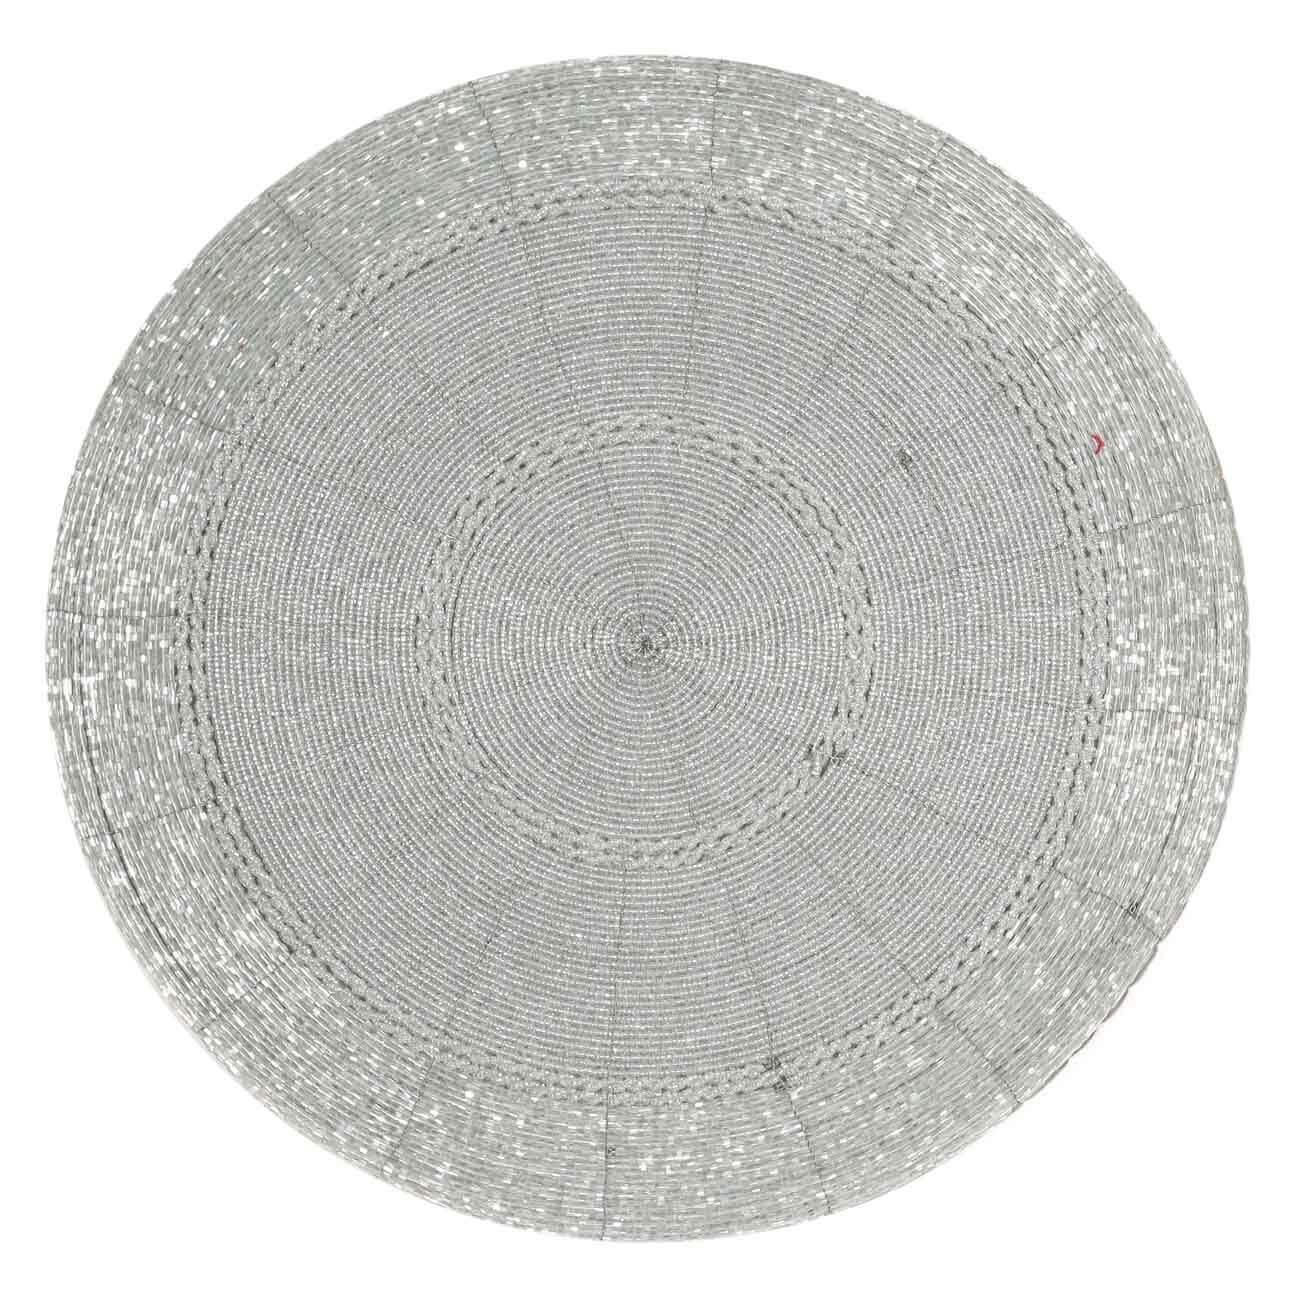 Салфетка под приборы, 36 см, бисер, круглая, светло-серебристая, Circle beads изображение № 1